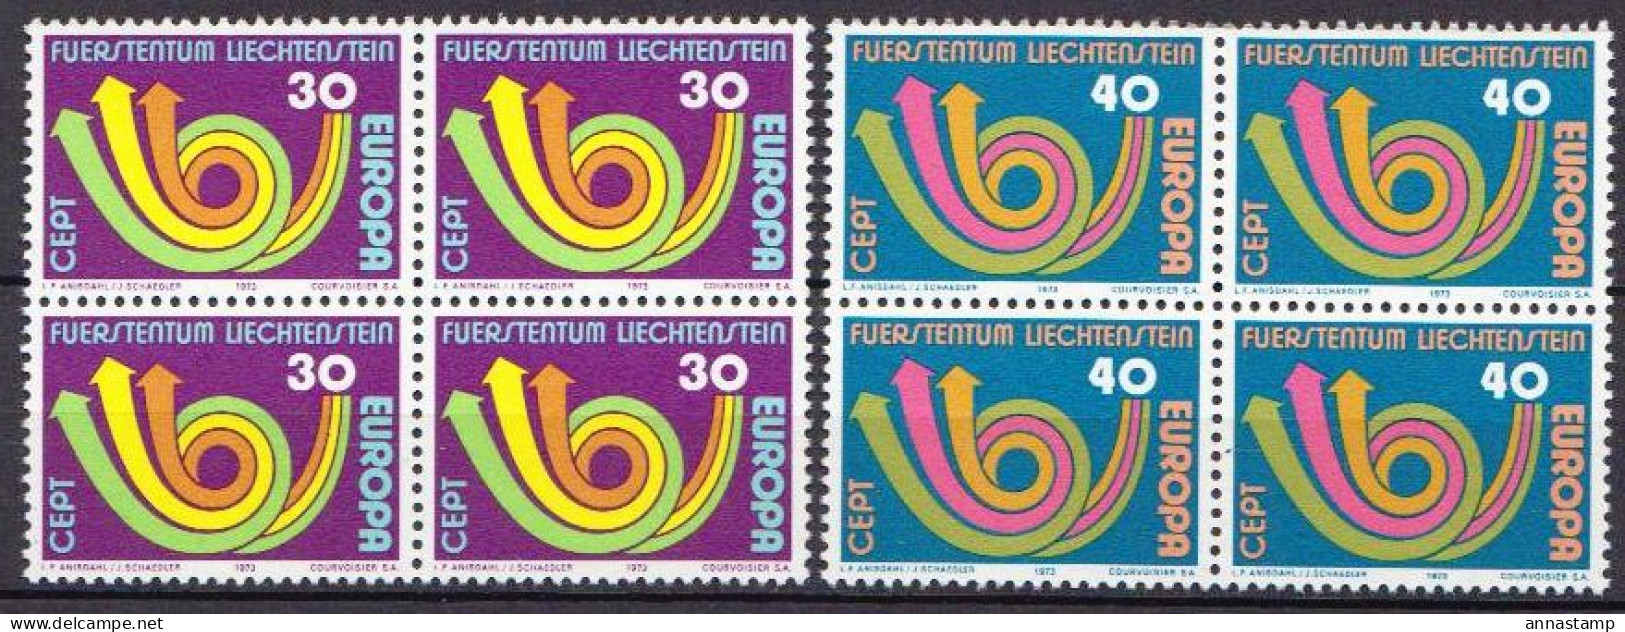 Liechtenstein MNH Set In Blocks Of 4 Stamps - 1973